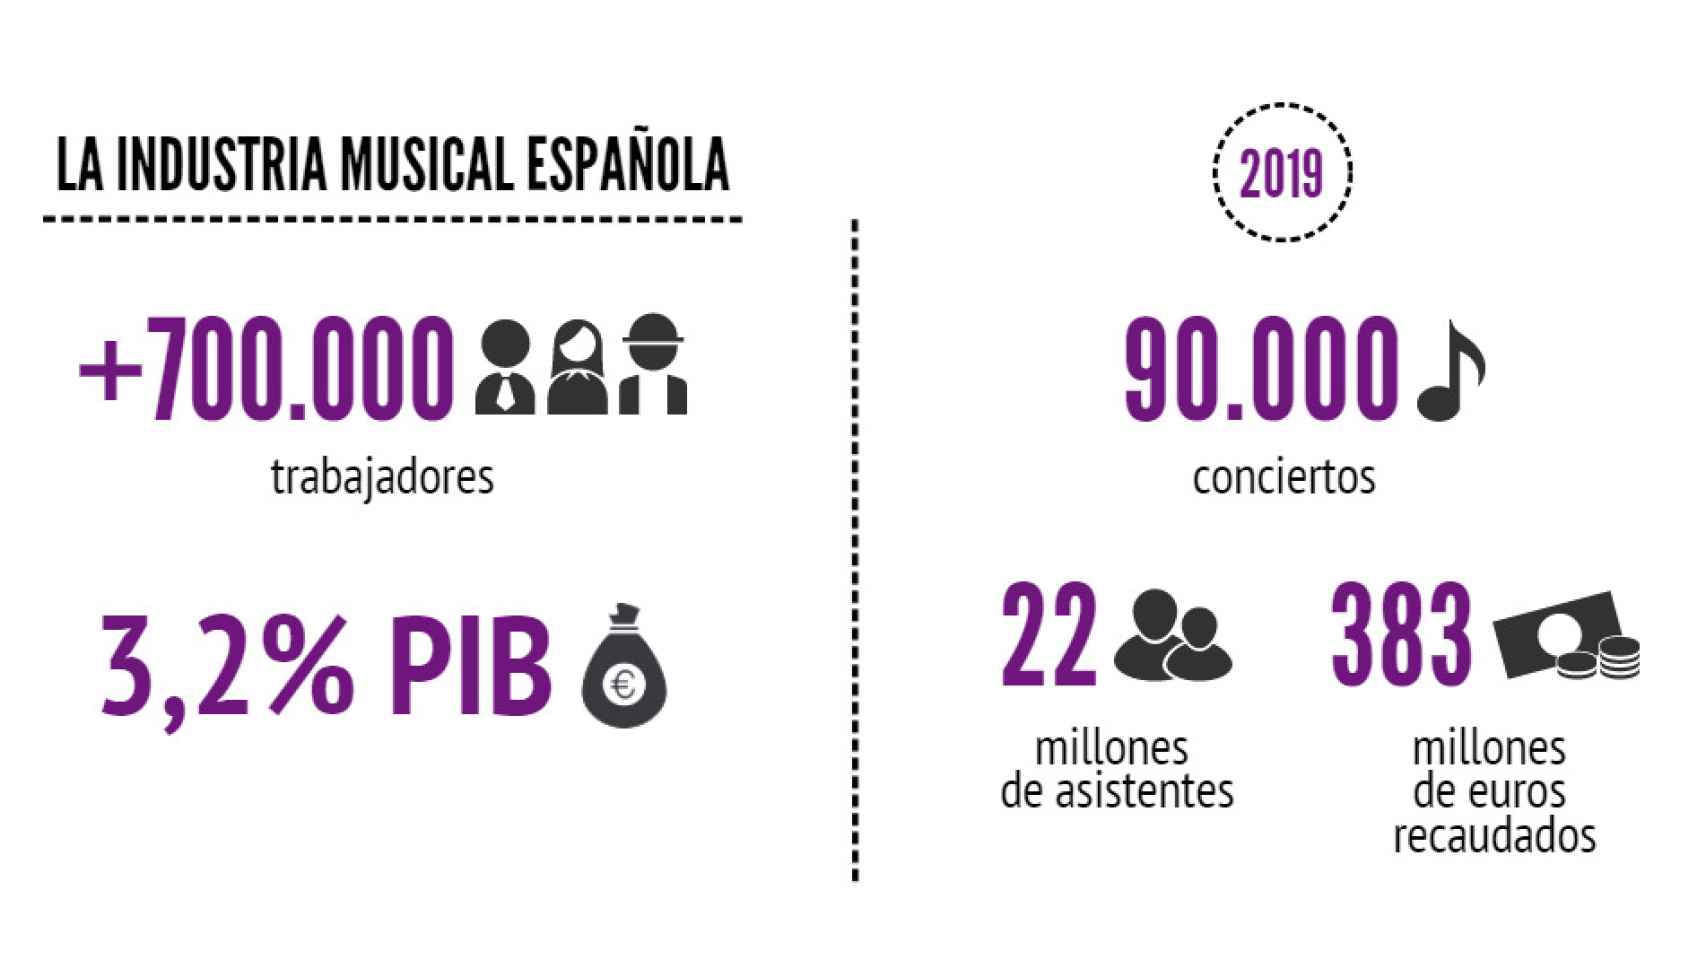 La industria musical española, en cifras